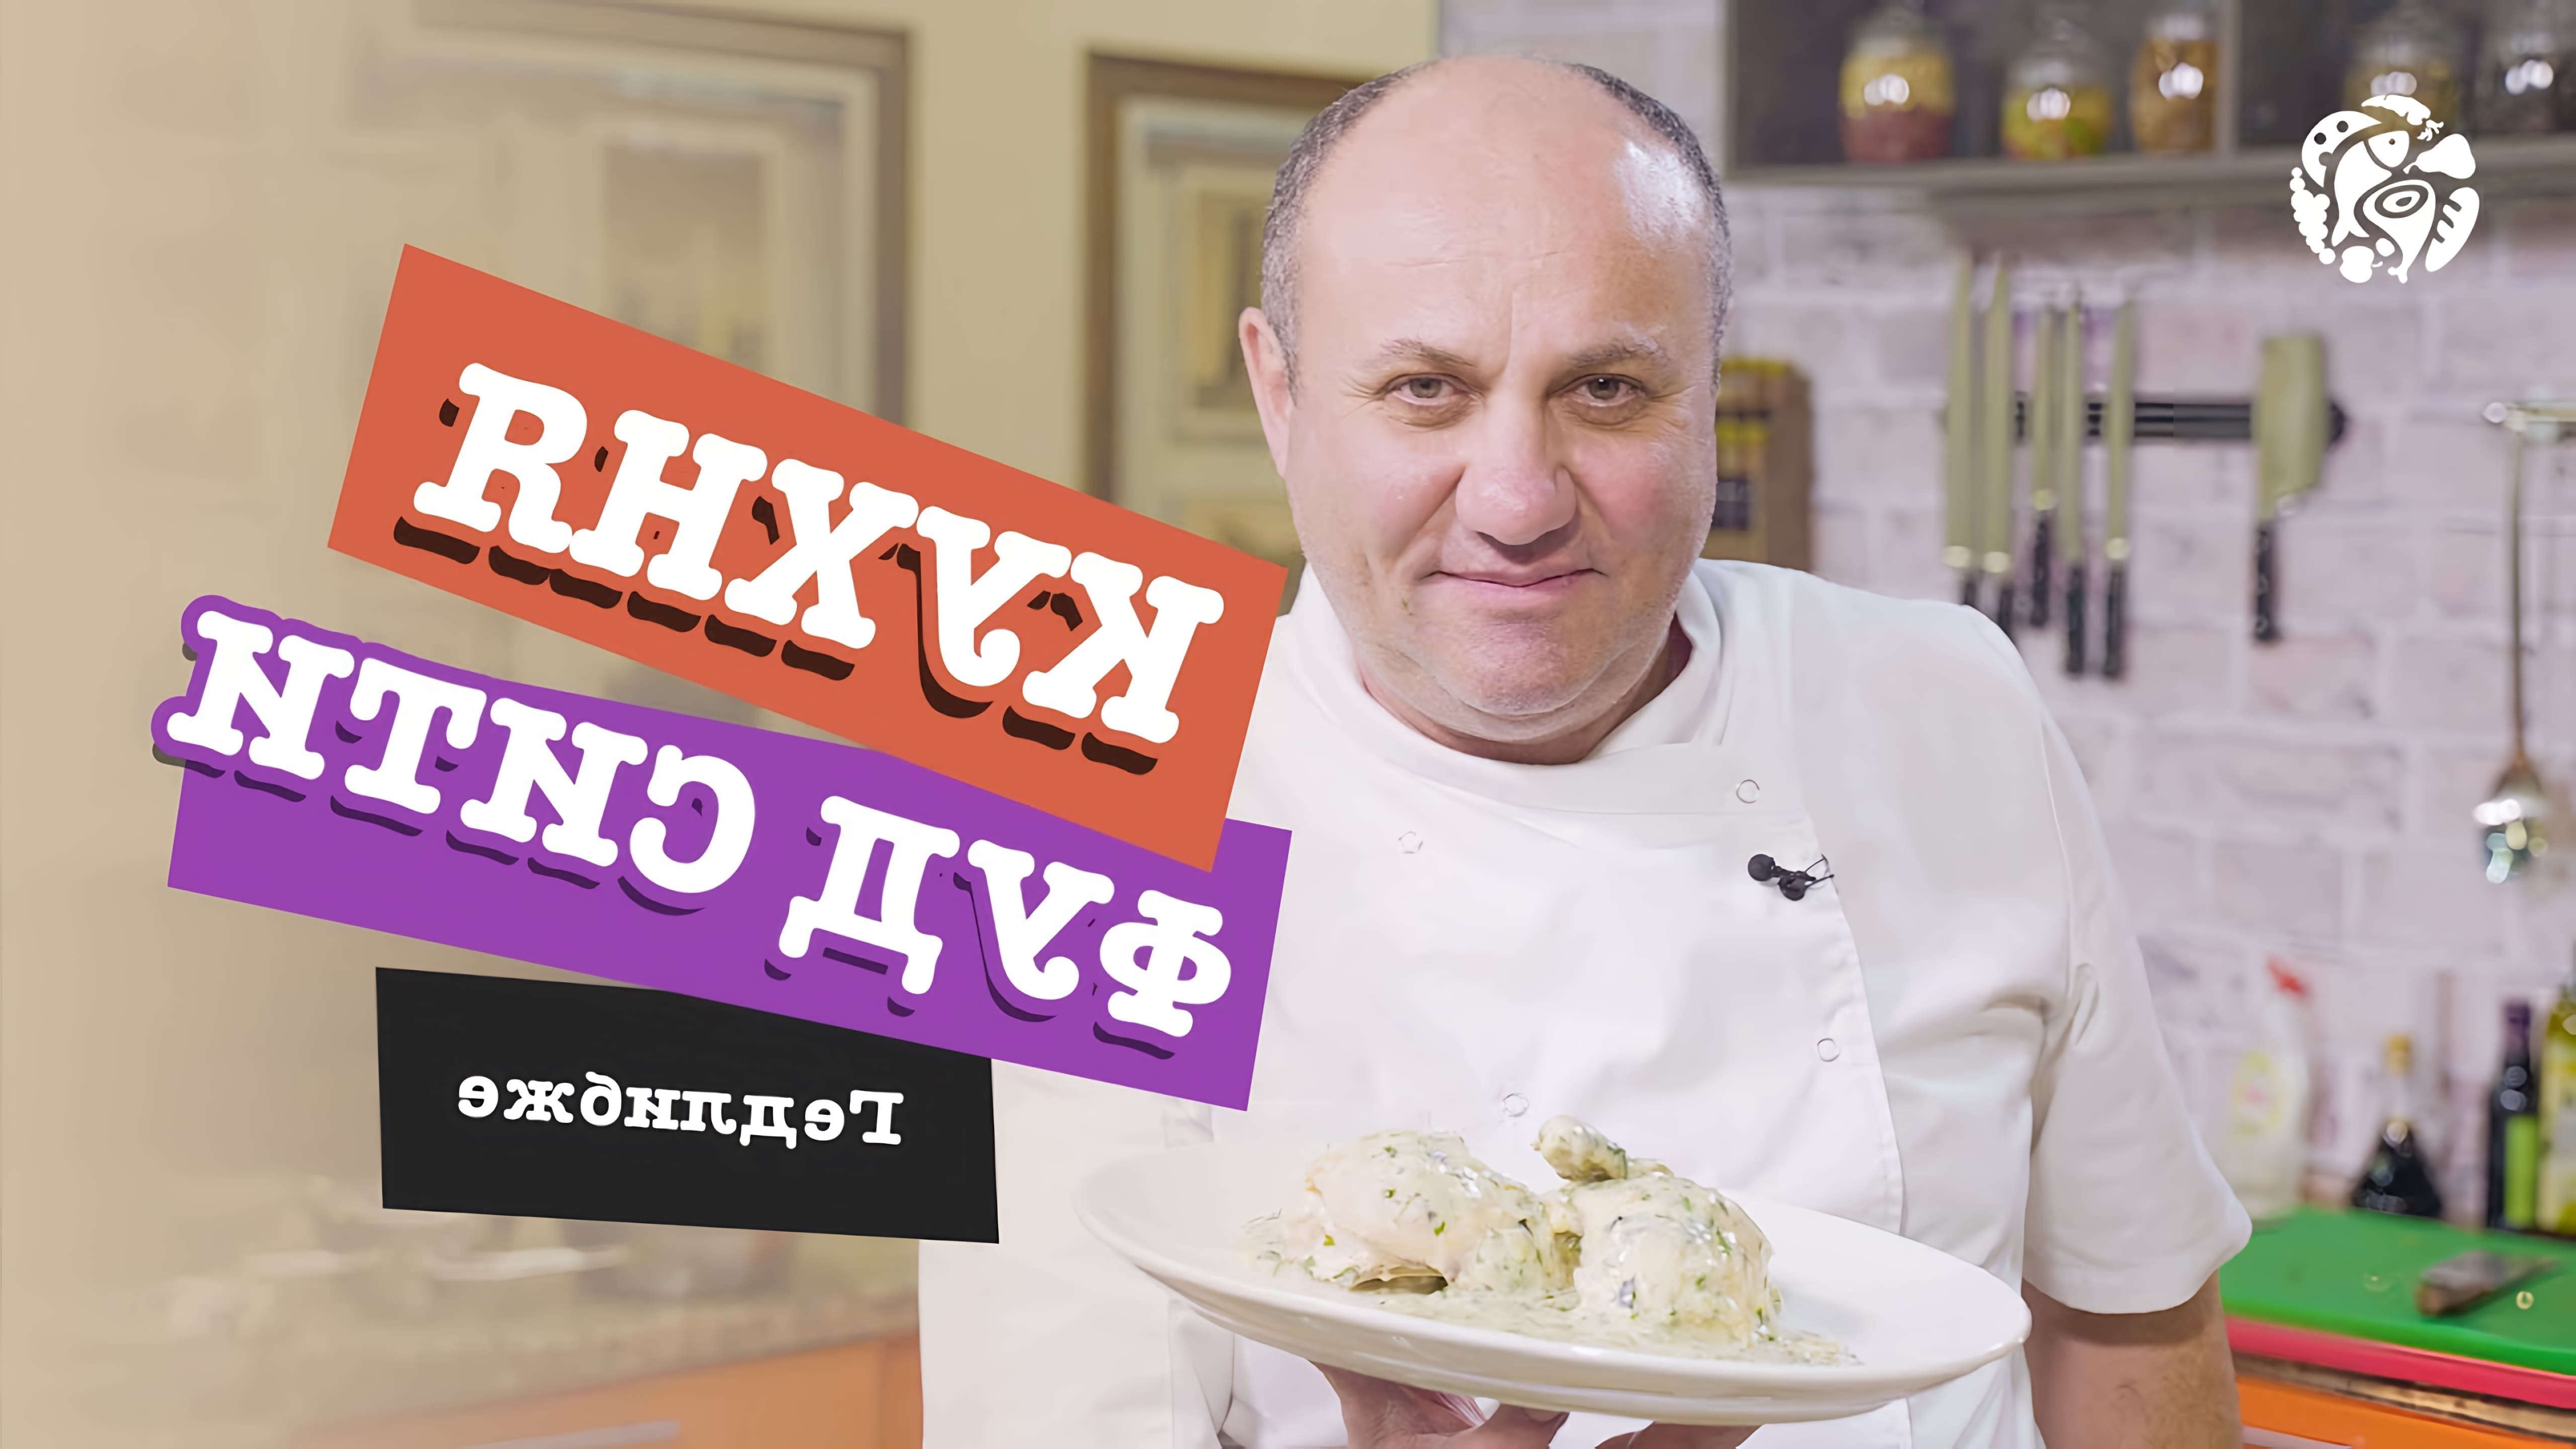 В этом видео Илья Лазерсон готовит кабардинское блюдо "Гедлибже" - курицу в сметанном соусе с чесноком и травами